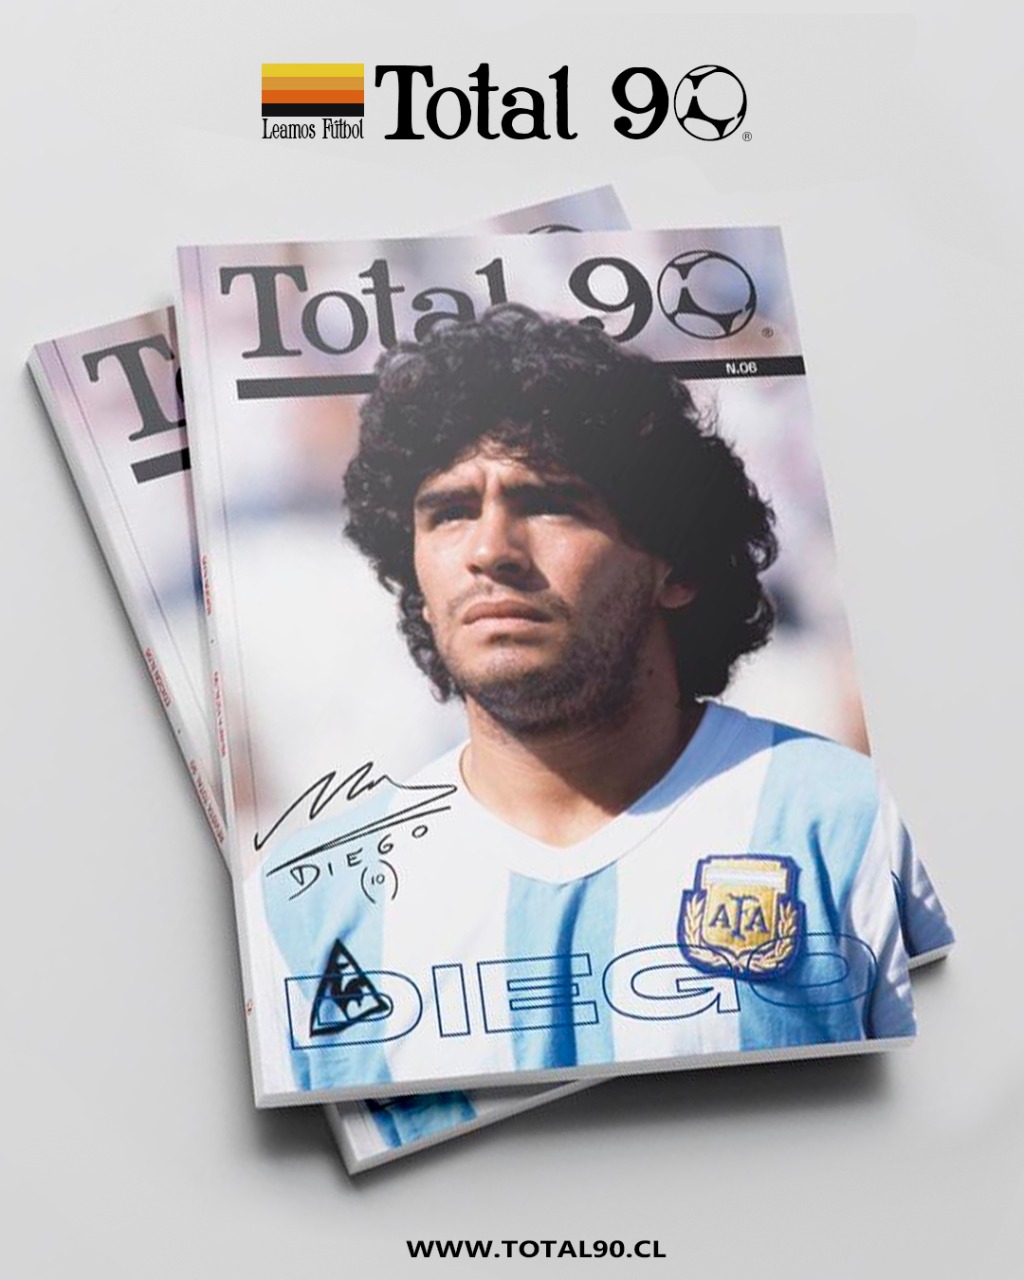 La revista dedicada a Maradona fue un éxito de ventas.